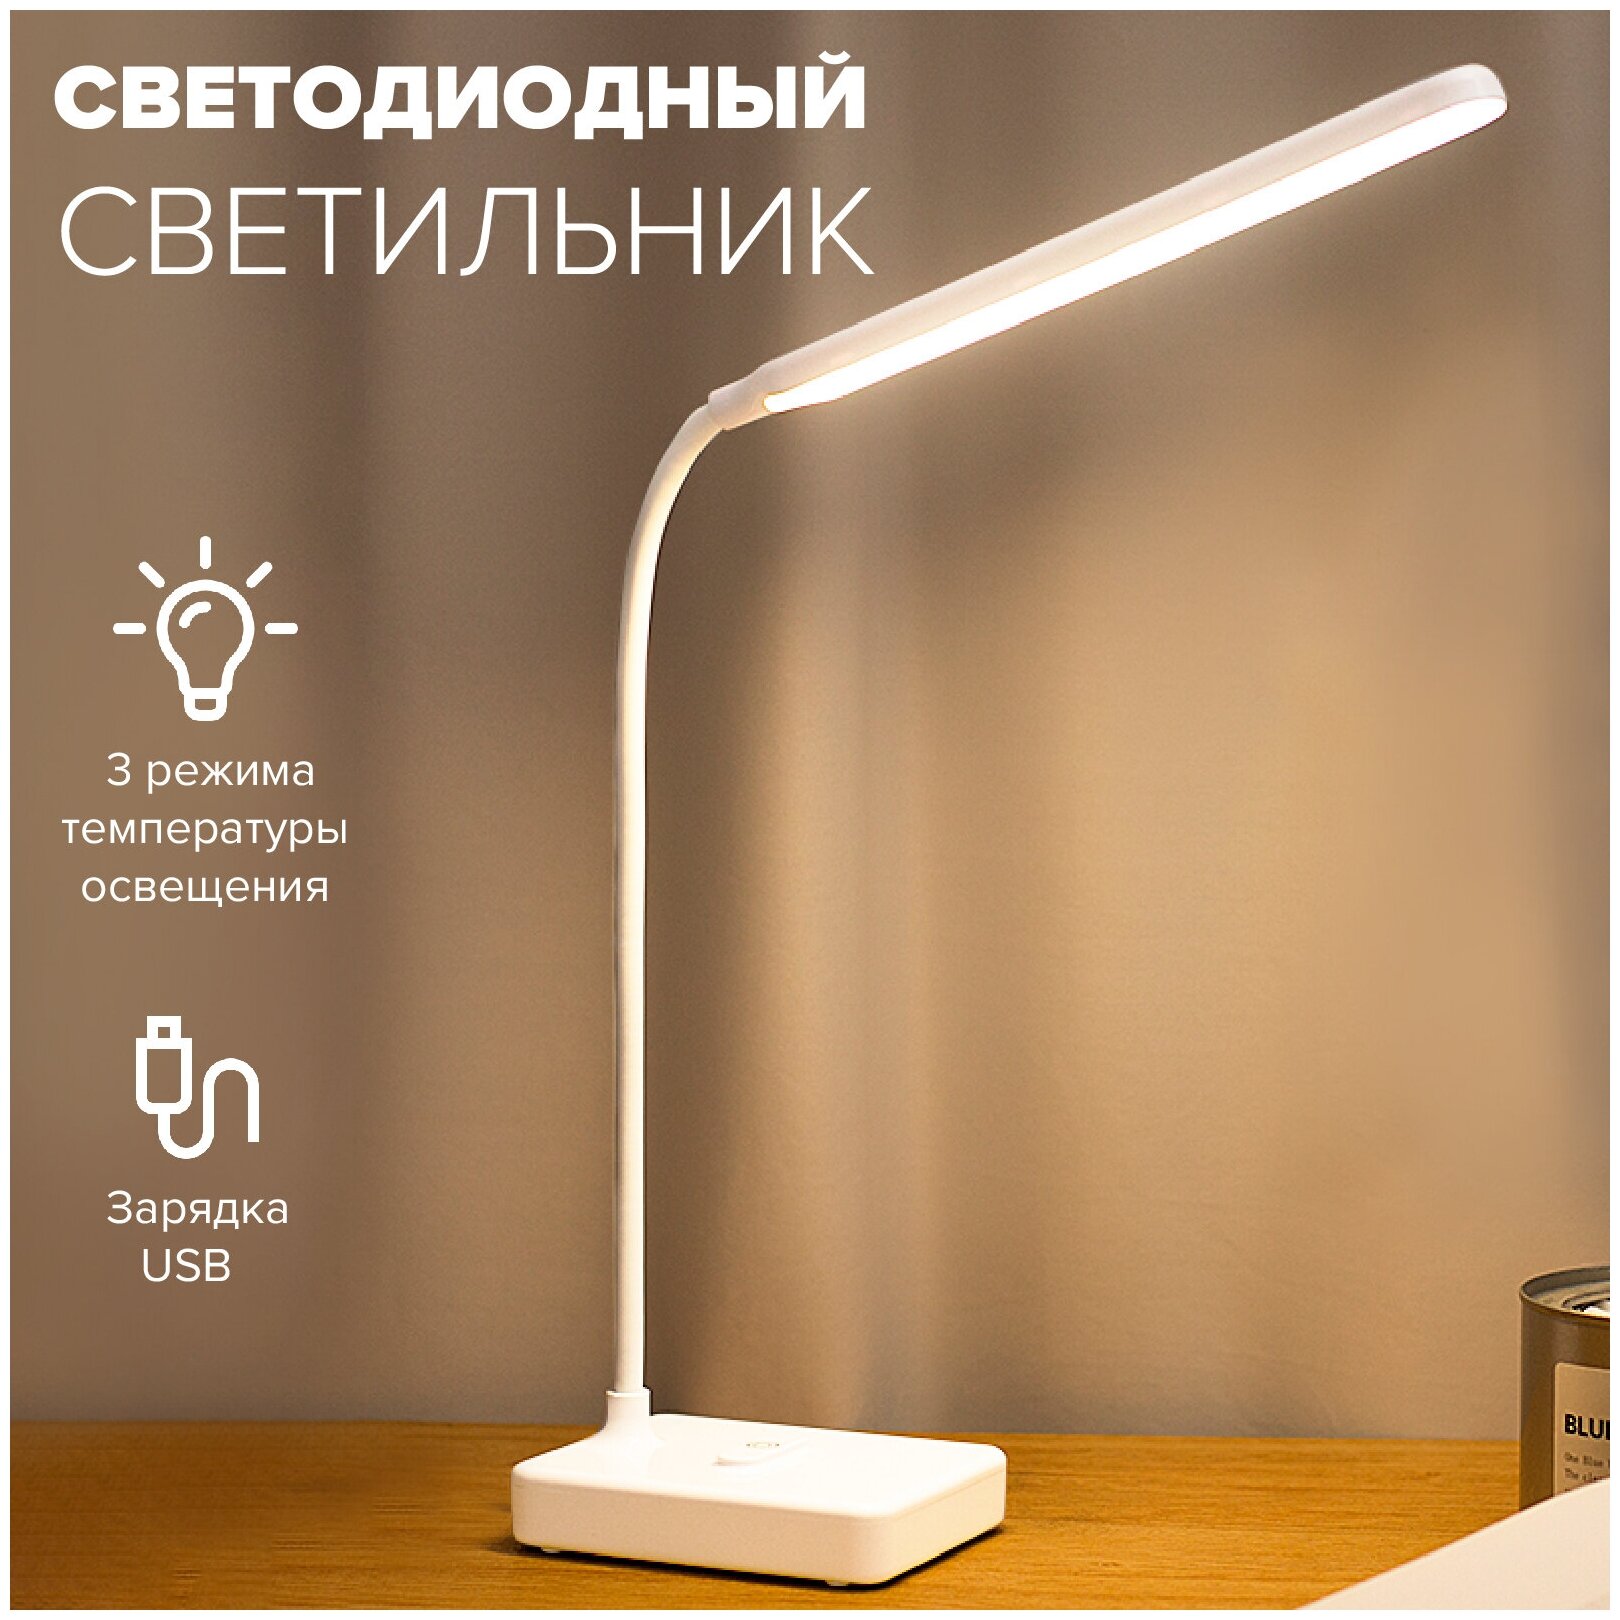 Светодиодная настольная лампа illumetik светильник с гнущейся ножкой с сенсорным управлением работа от USB